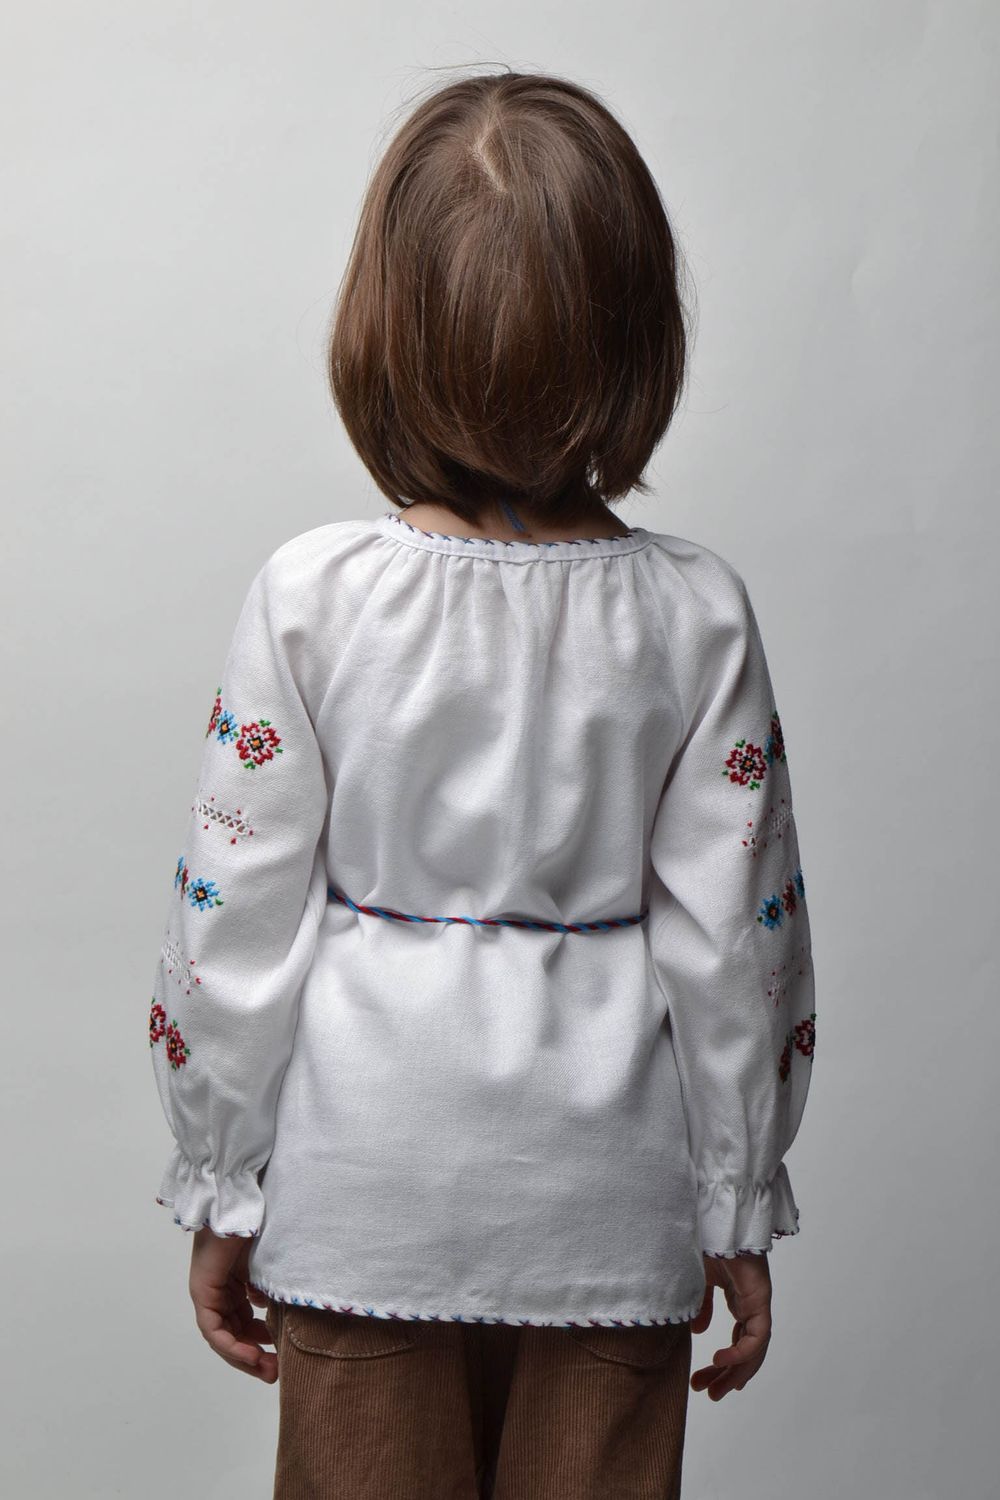 Вышитая рубашка на ребенка 5-7 лет с длинными рукавами и пояском фото 4